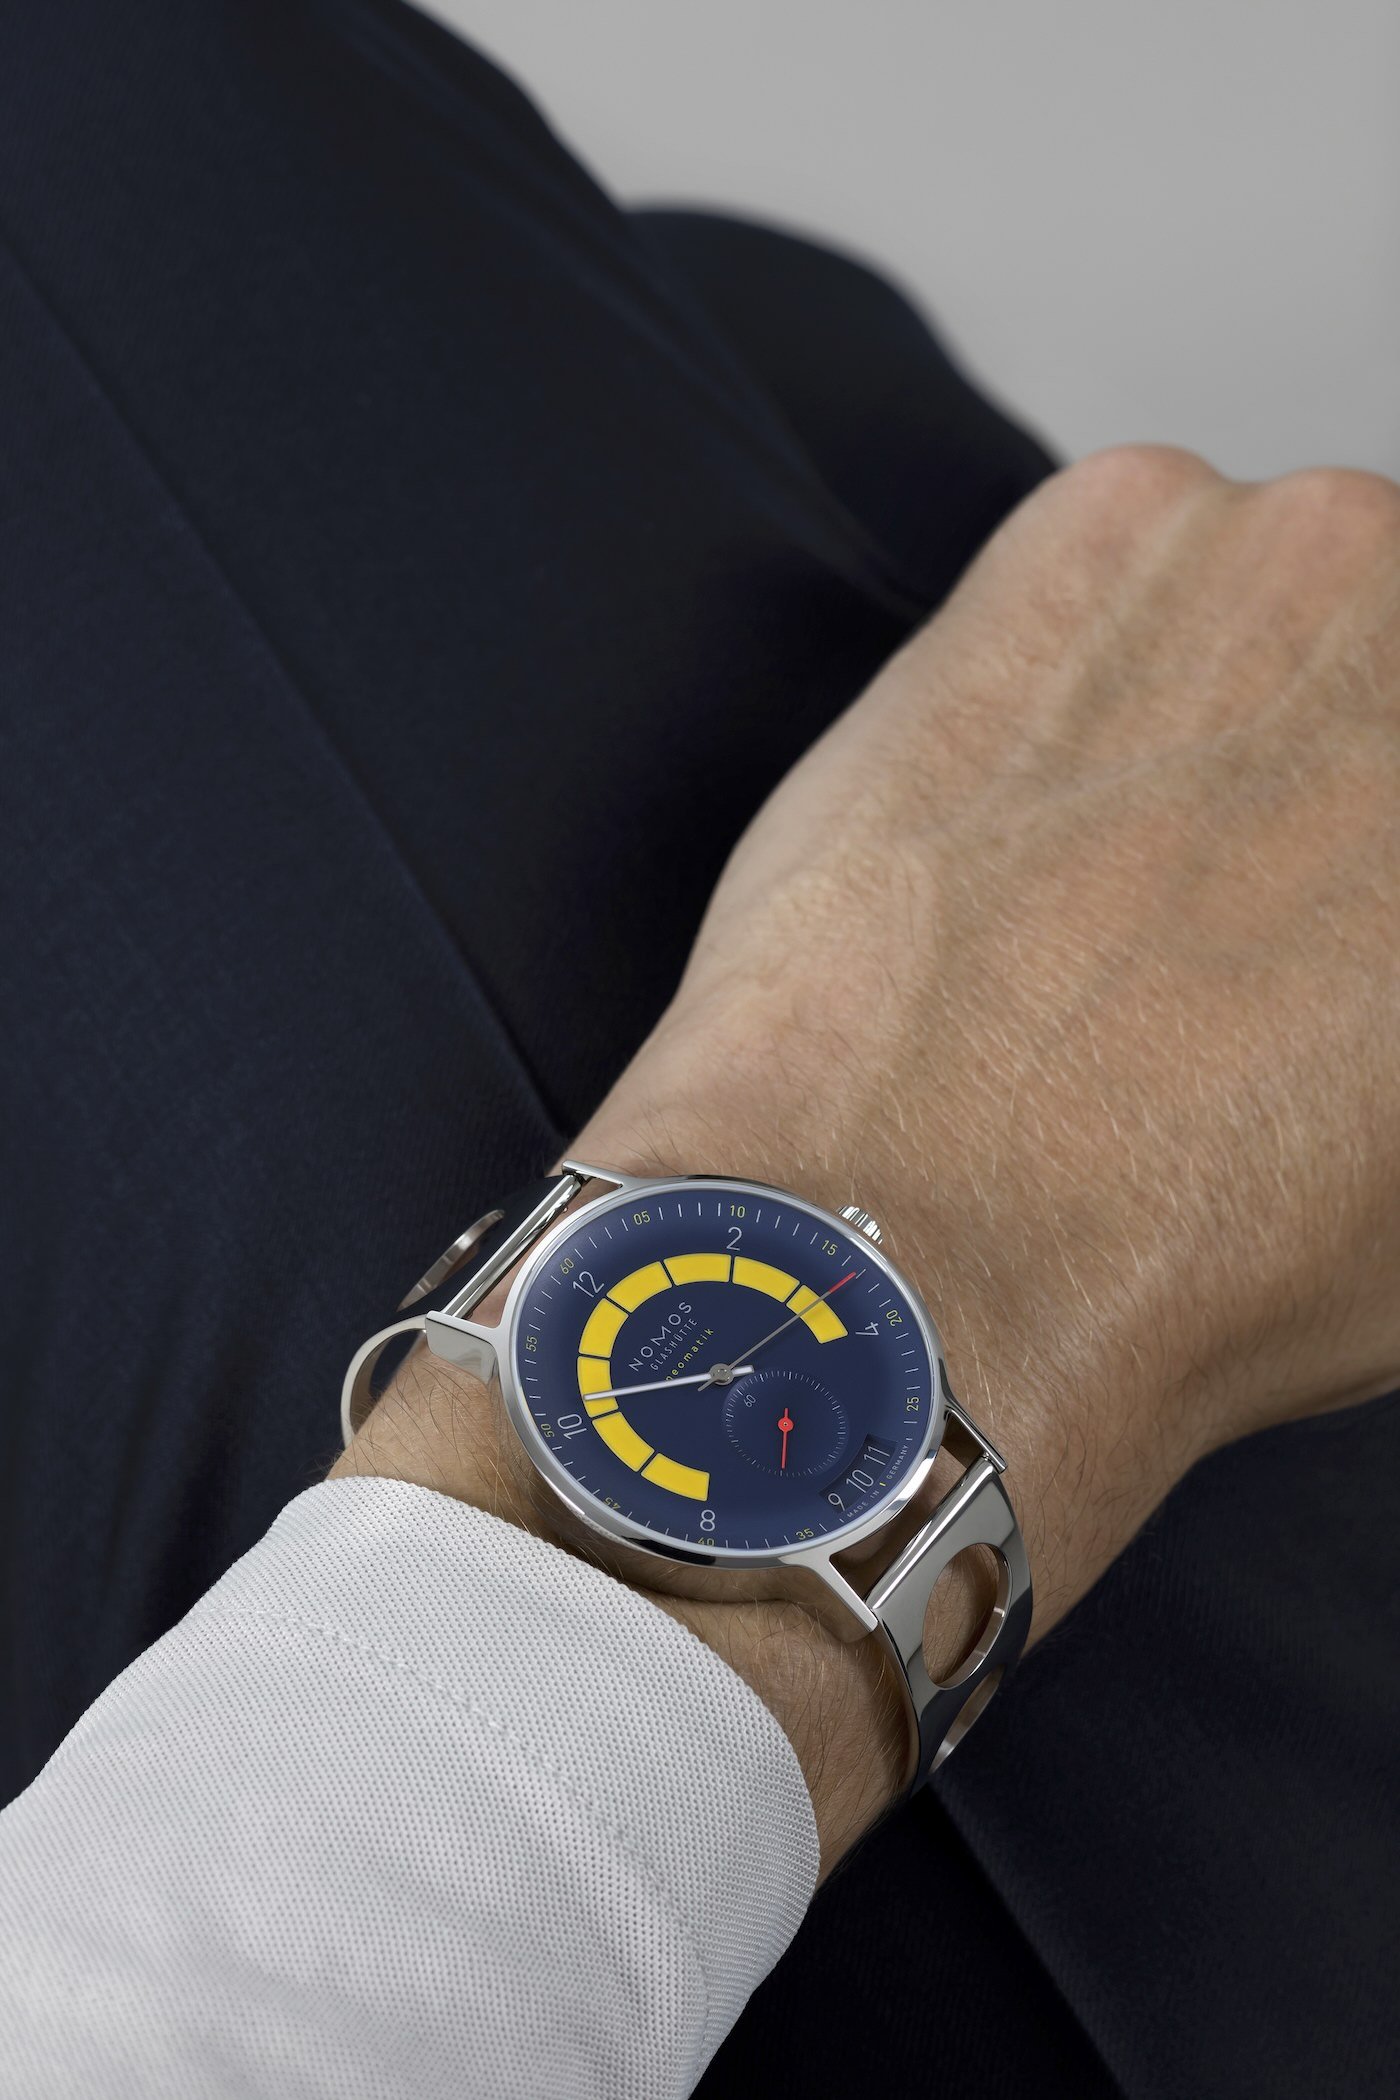 NOMOS выпускает три новых лимитированных серии часов Autobahn Director's Cut с яркими цветовыми решениями